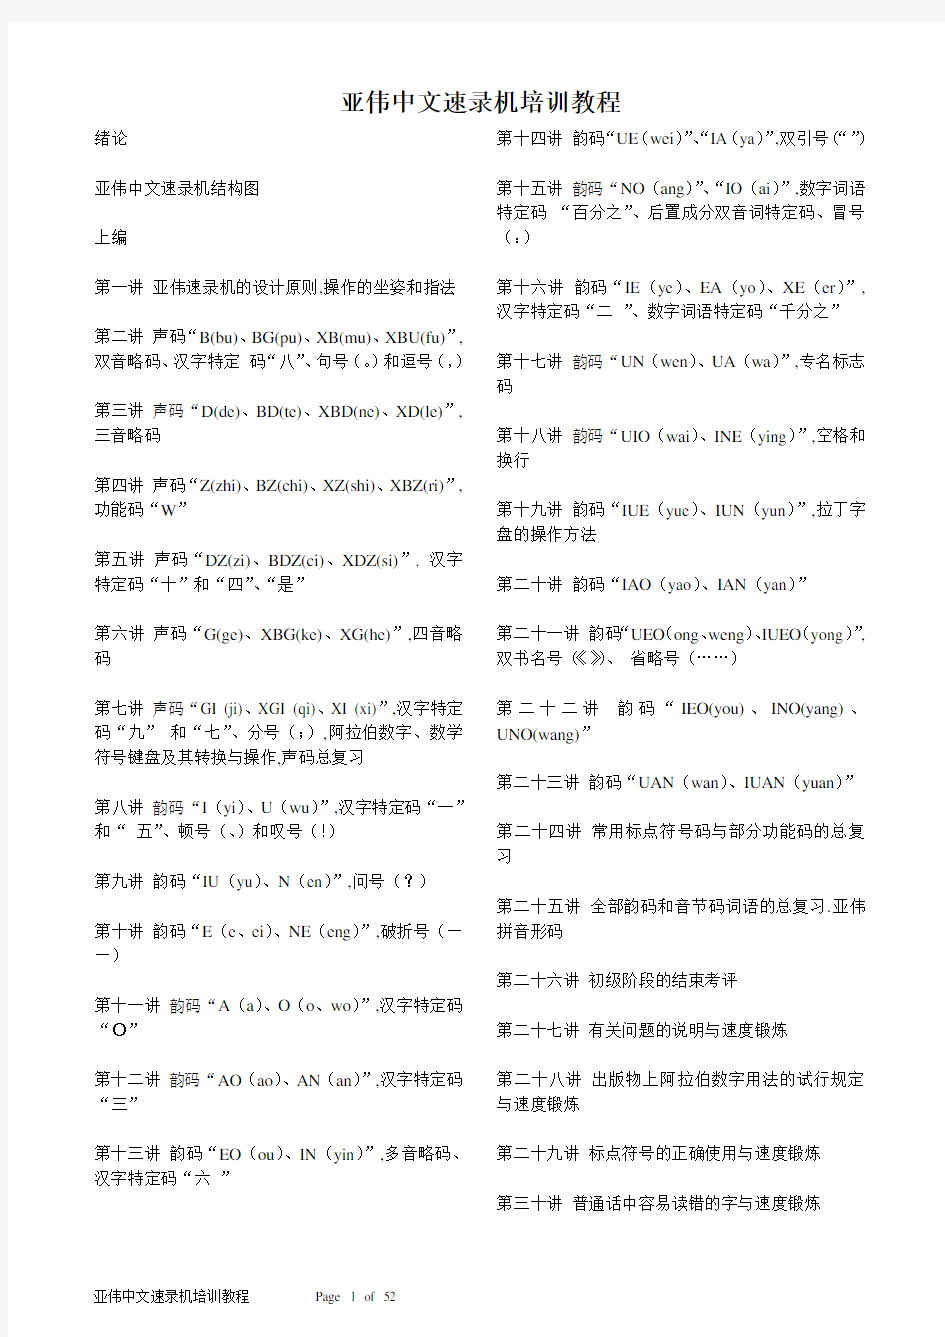 亚伟中文速录机培训教程(6.0版)